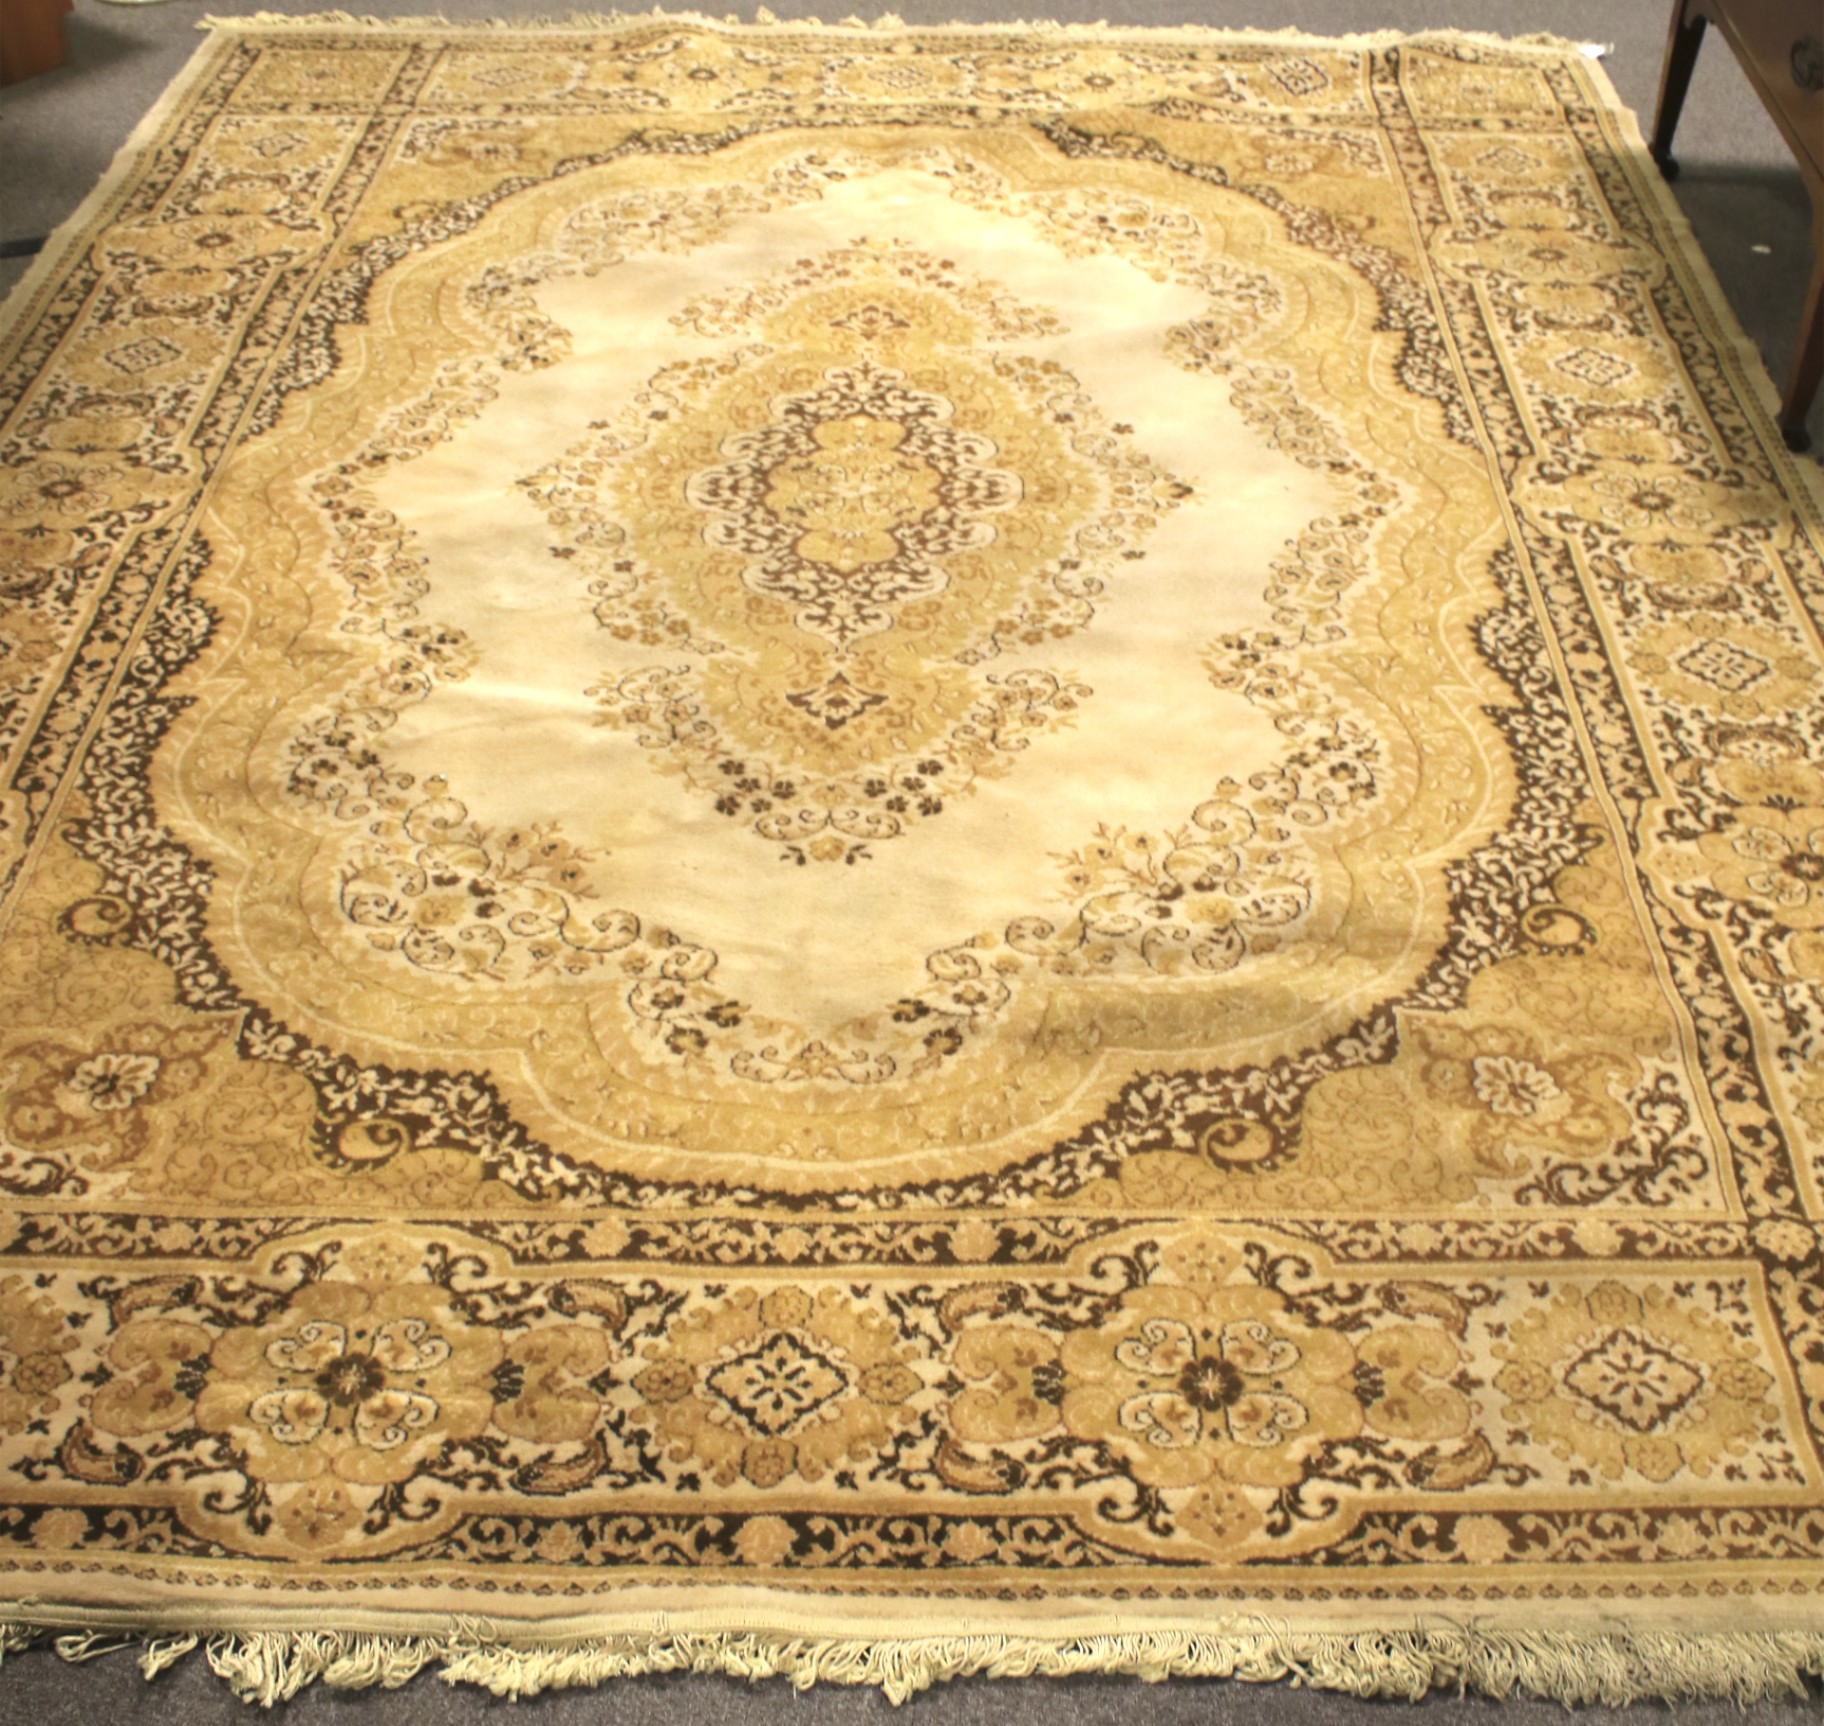 A large woollen blend rug.